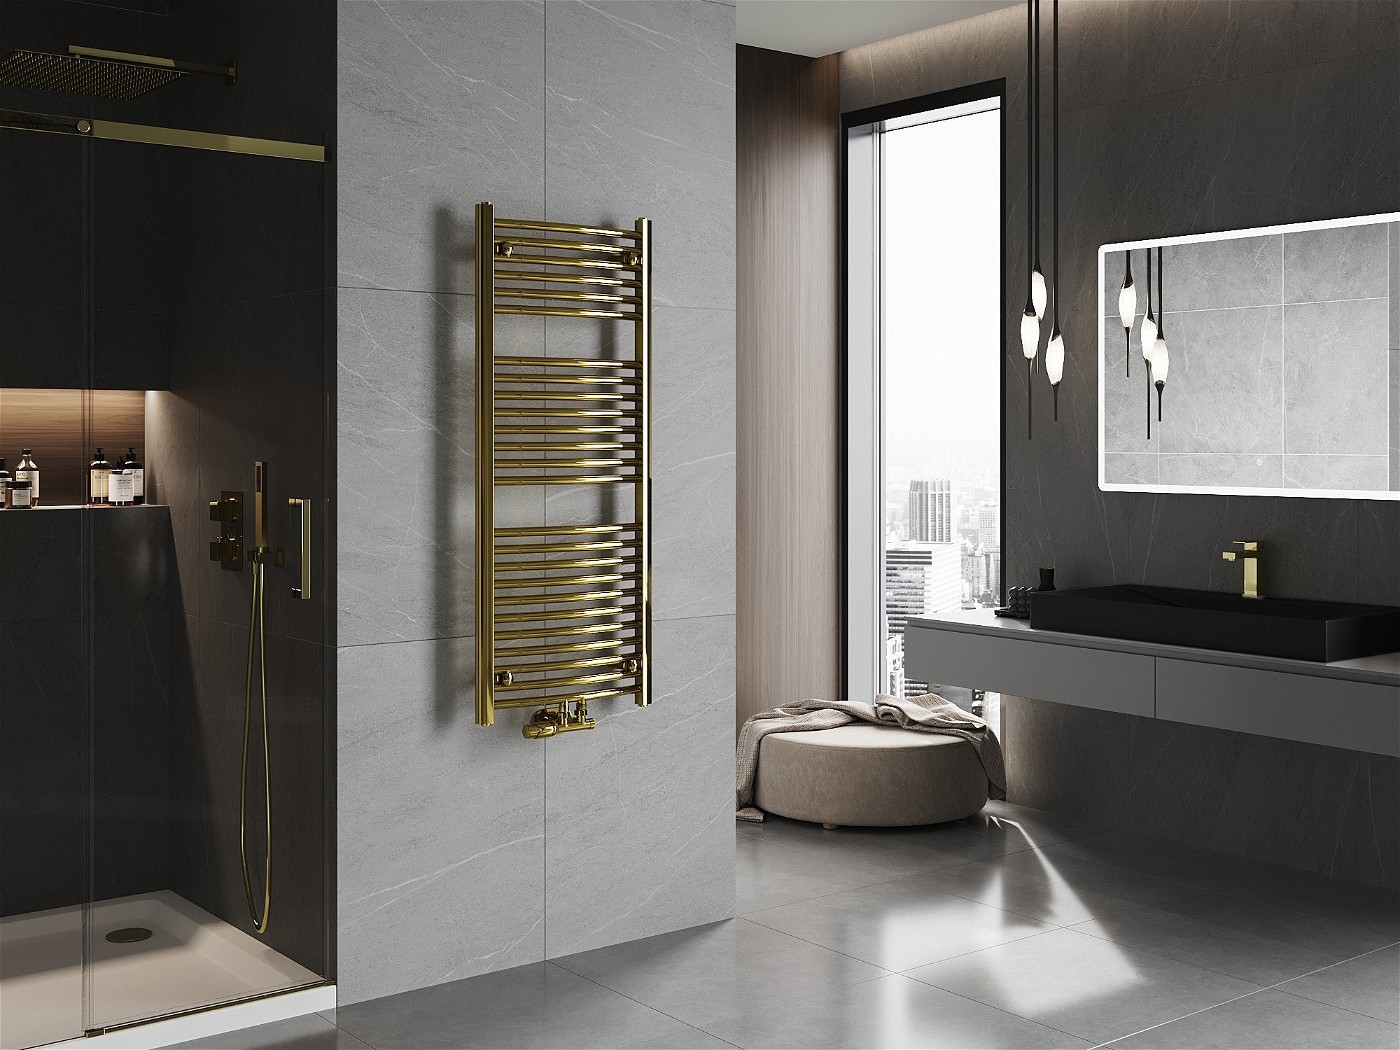 Kolor, styl i funkcjonalność  - czyli złoty grzejnik w łazience